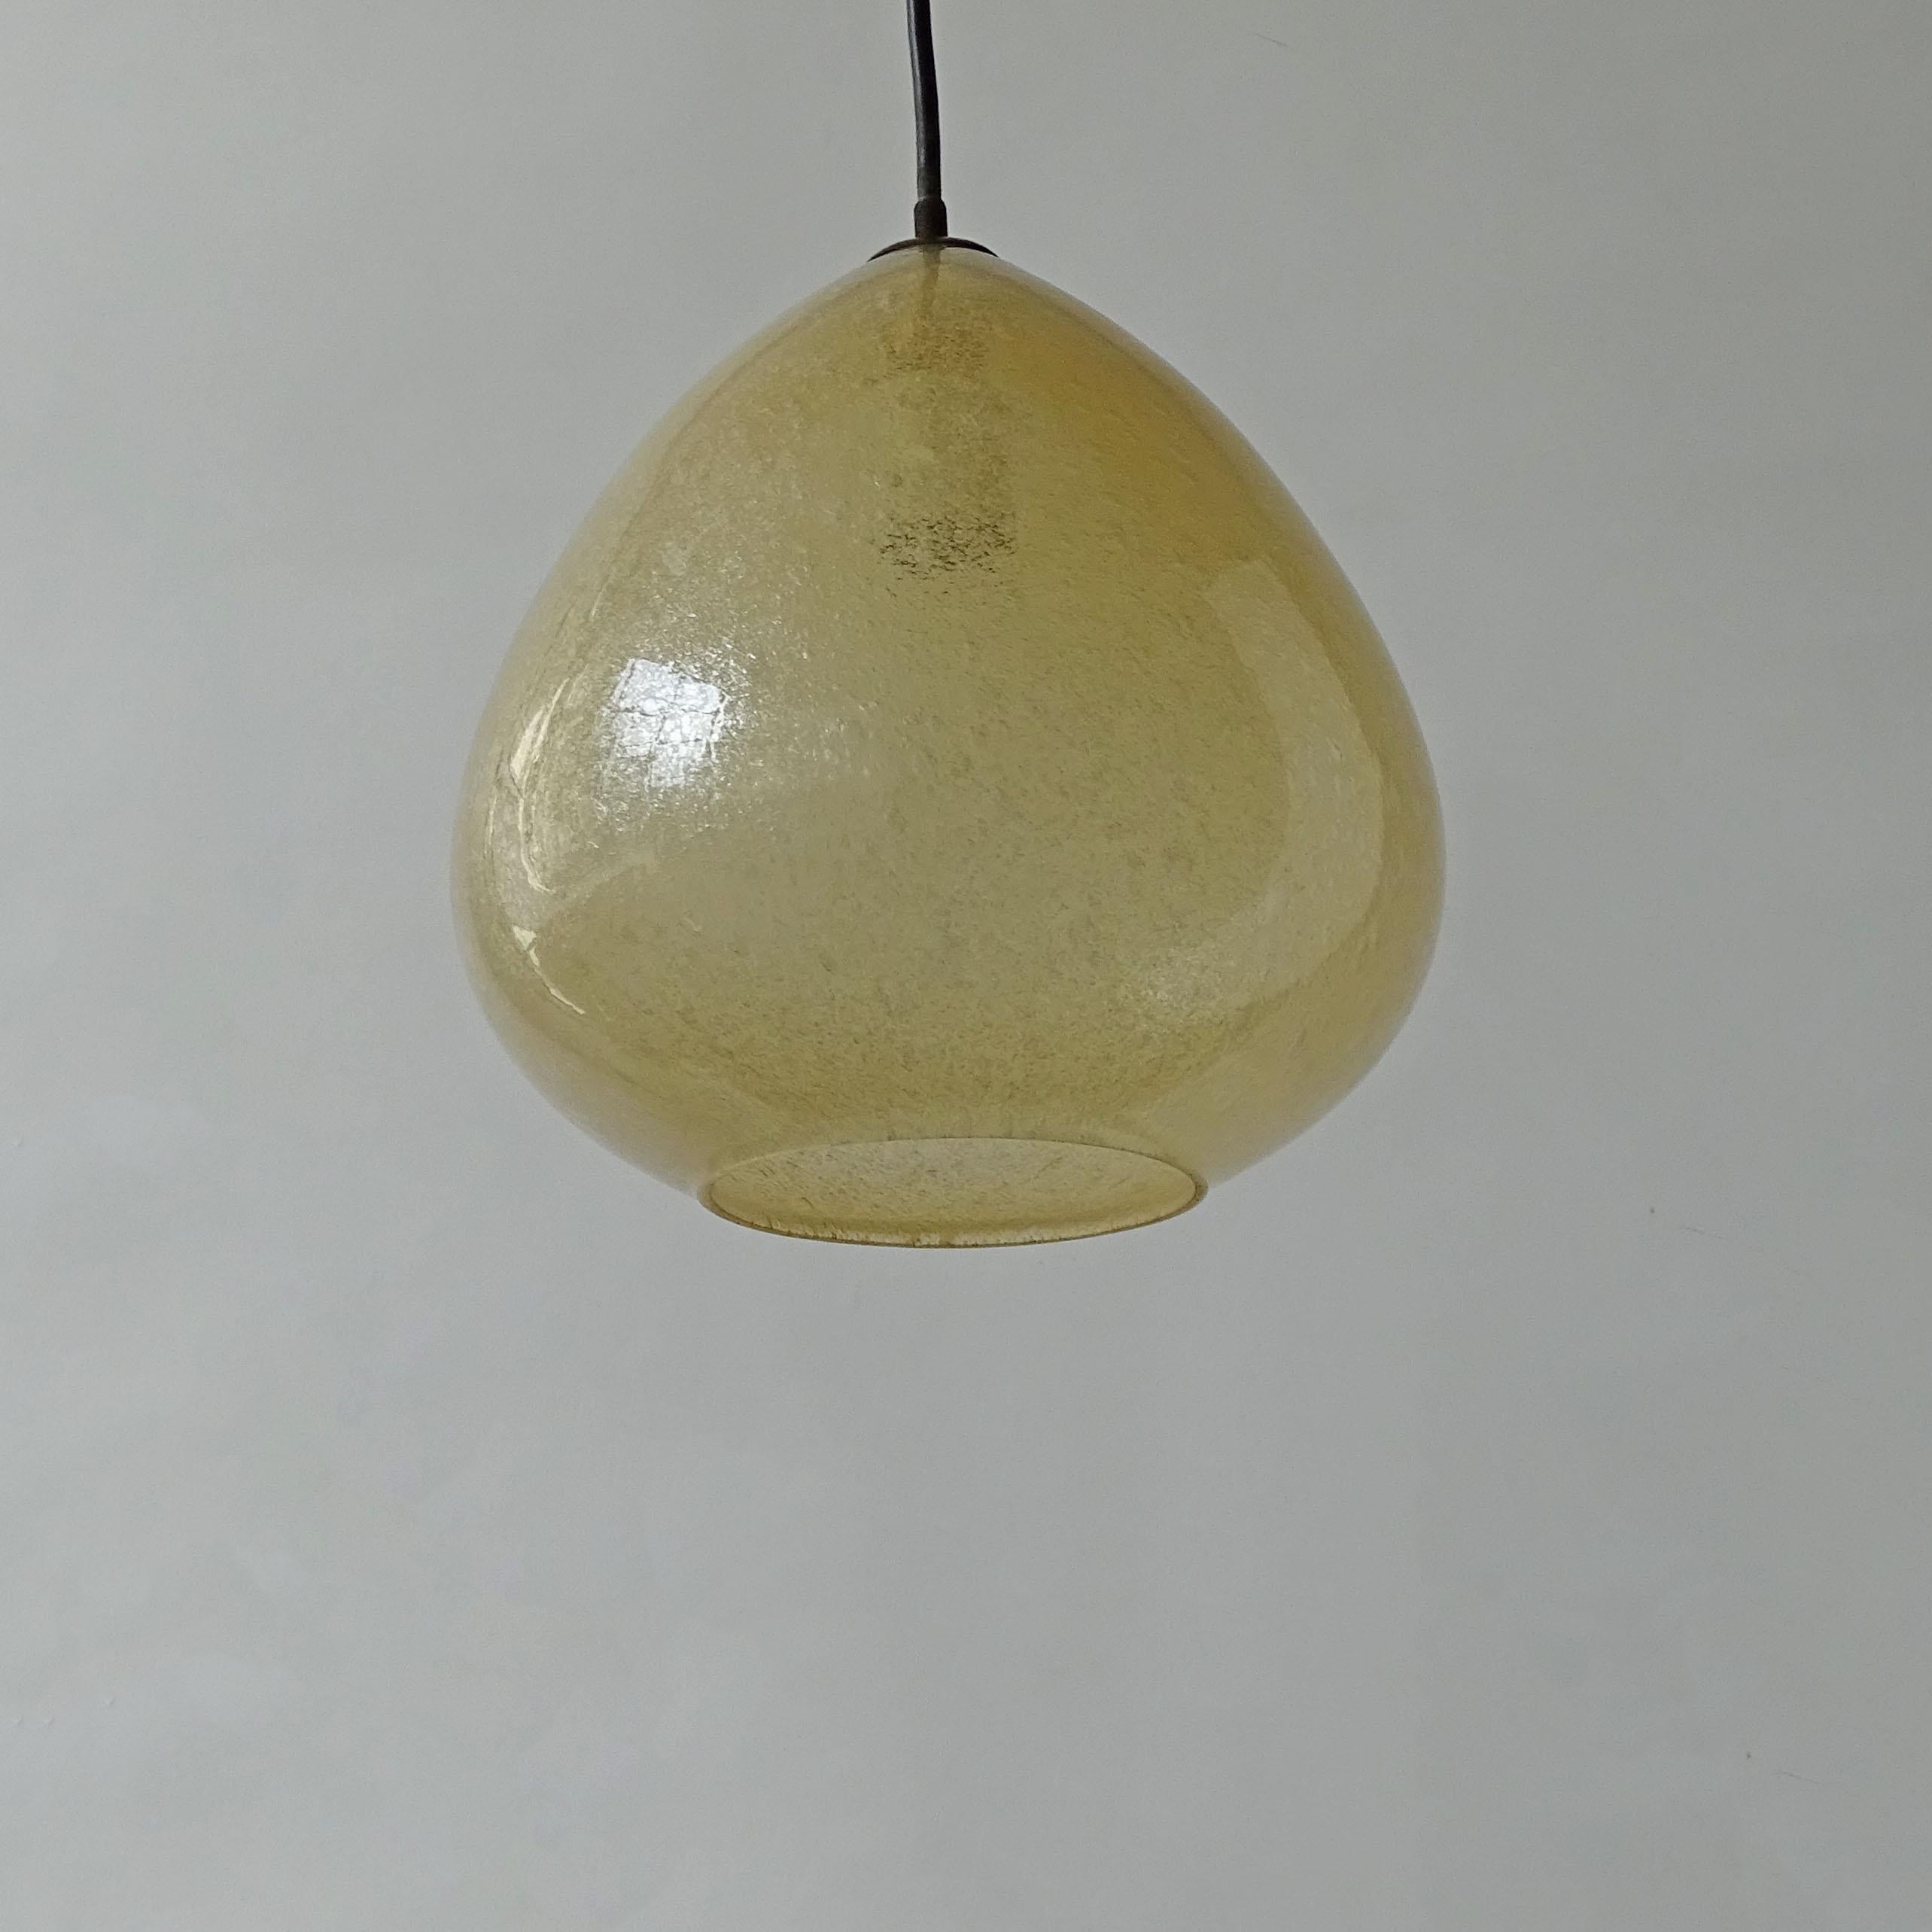 Magnifique paire de lampes suspendues Seguso en verre de Murano jaune.